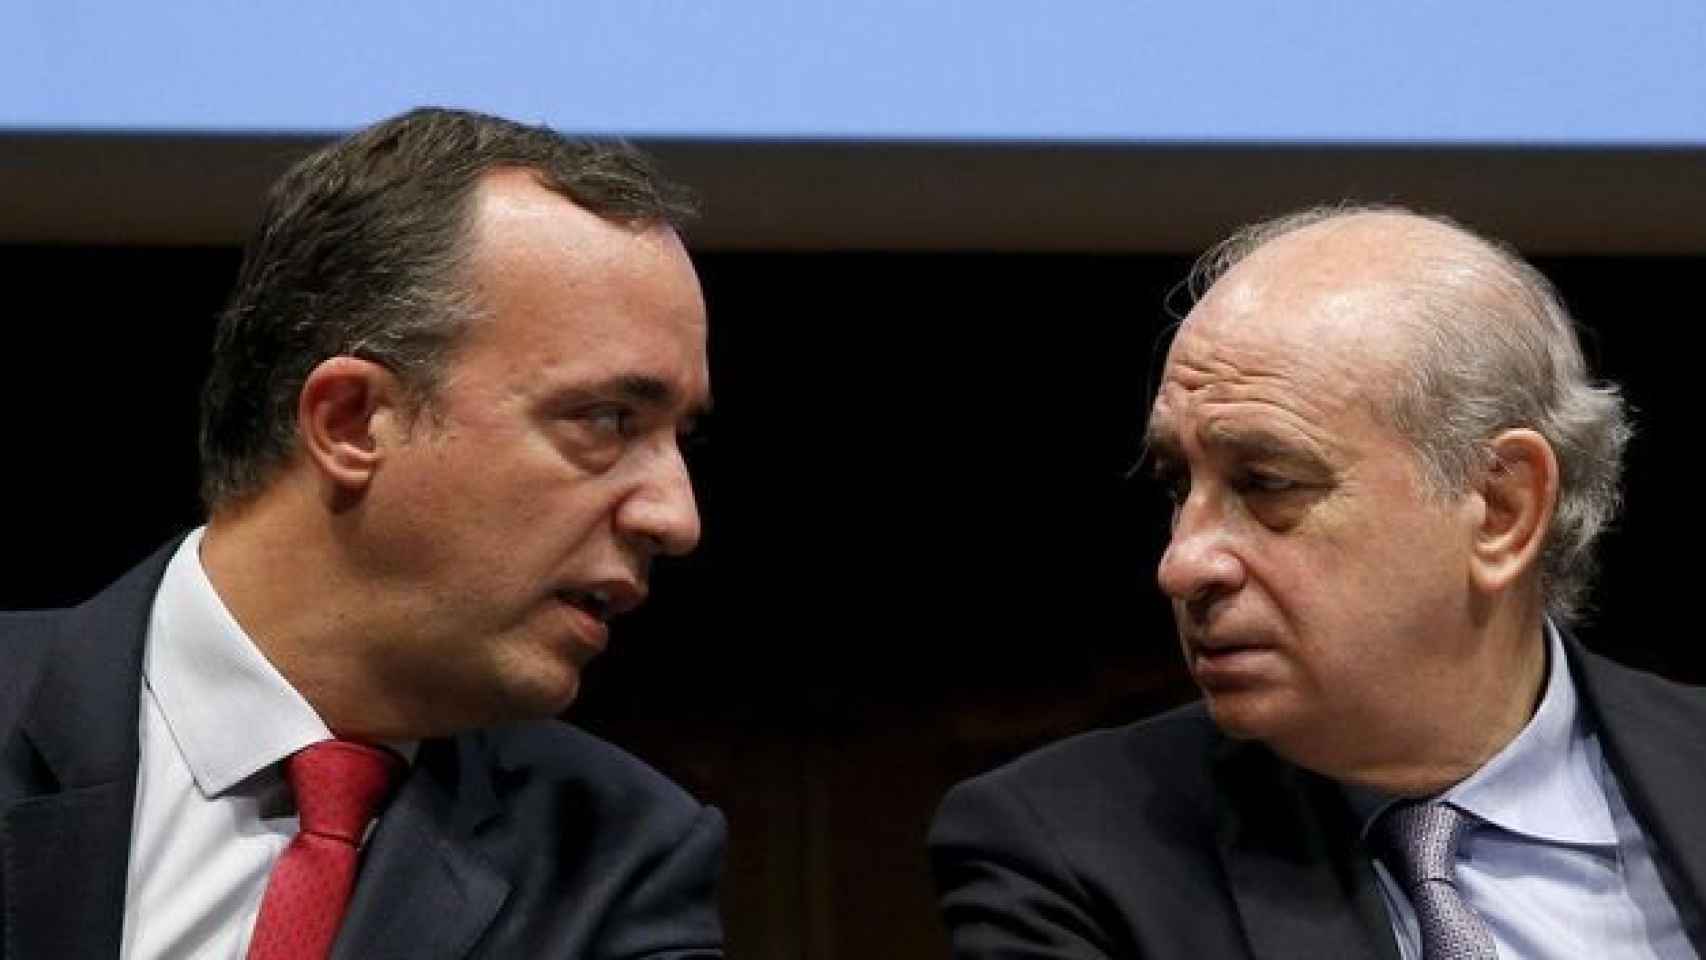 El ex secretario de Estado de Seguridad Francisco Martínez y el exministro del Interior Jorge Fernández Díaz.